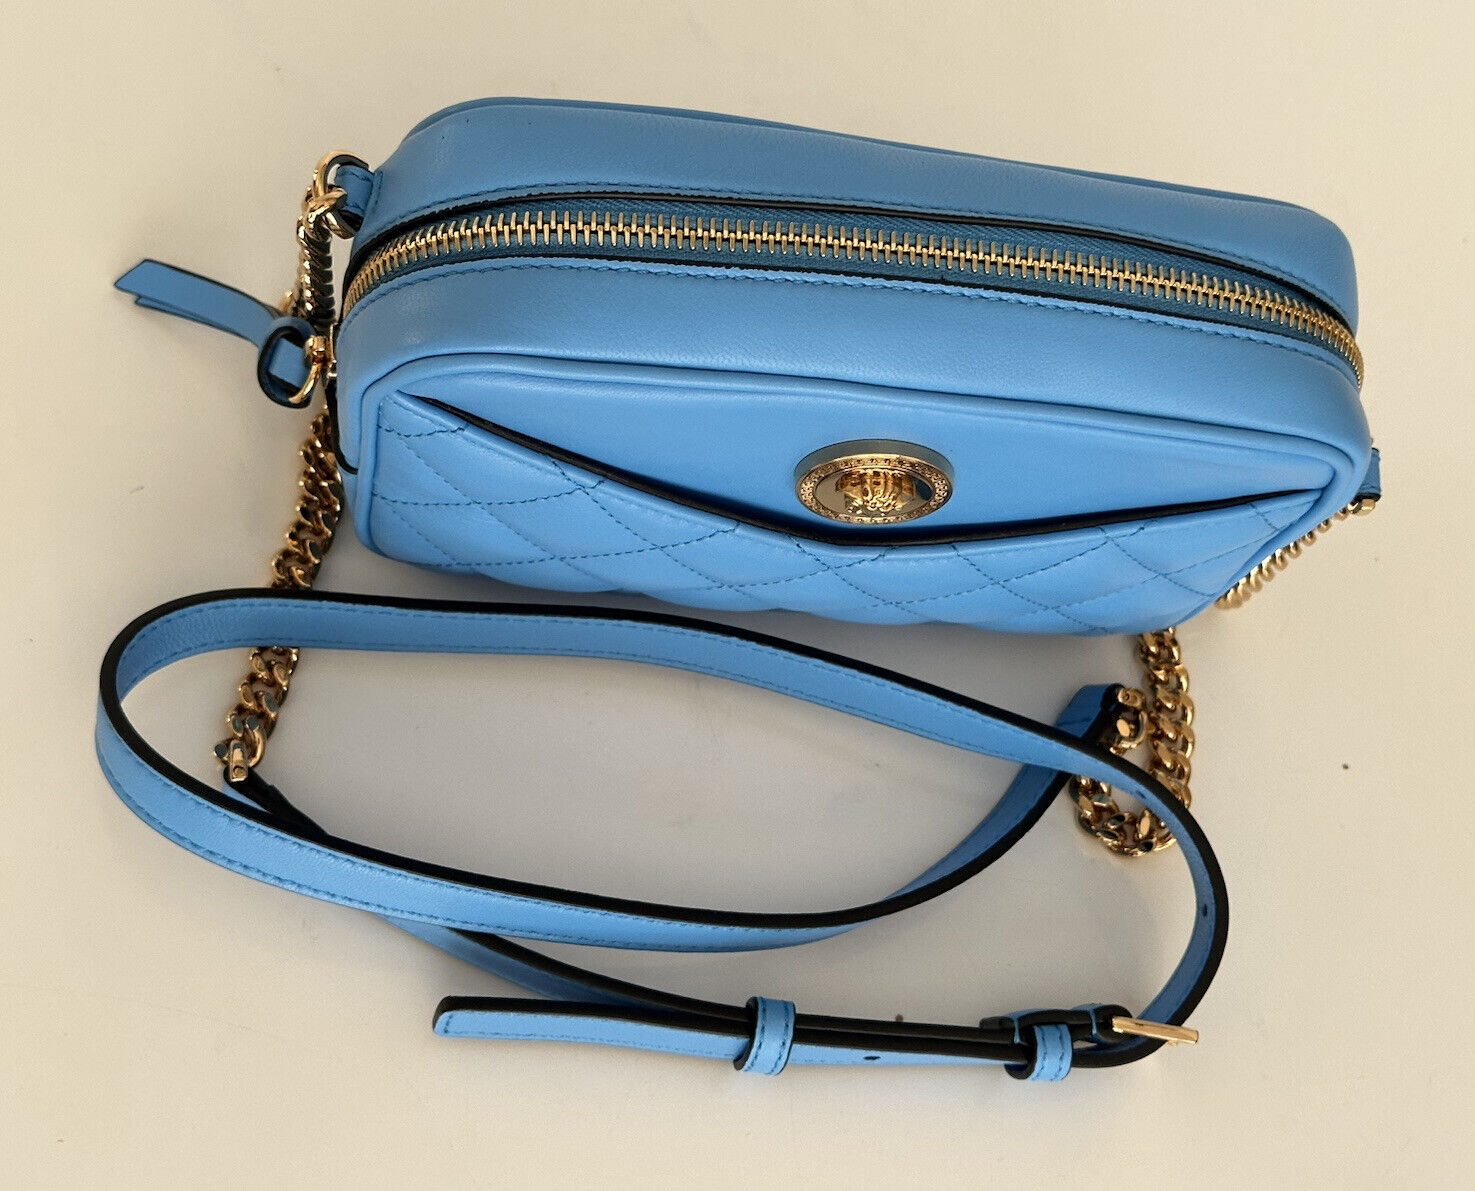 NWT 1195 $ Versace Kleine Umhängetasche aus gestepptem Lammleder in Blau 1008827 Italien 